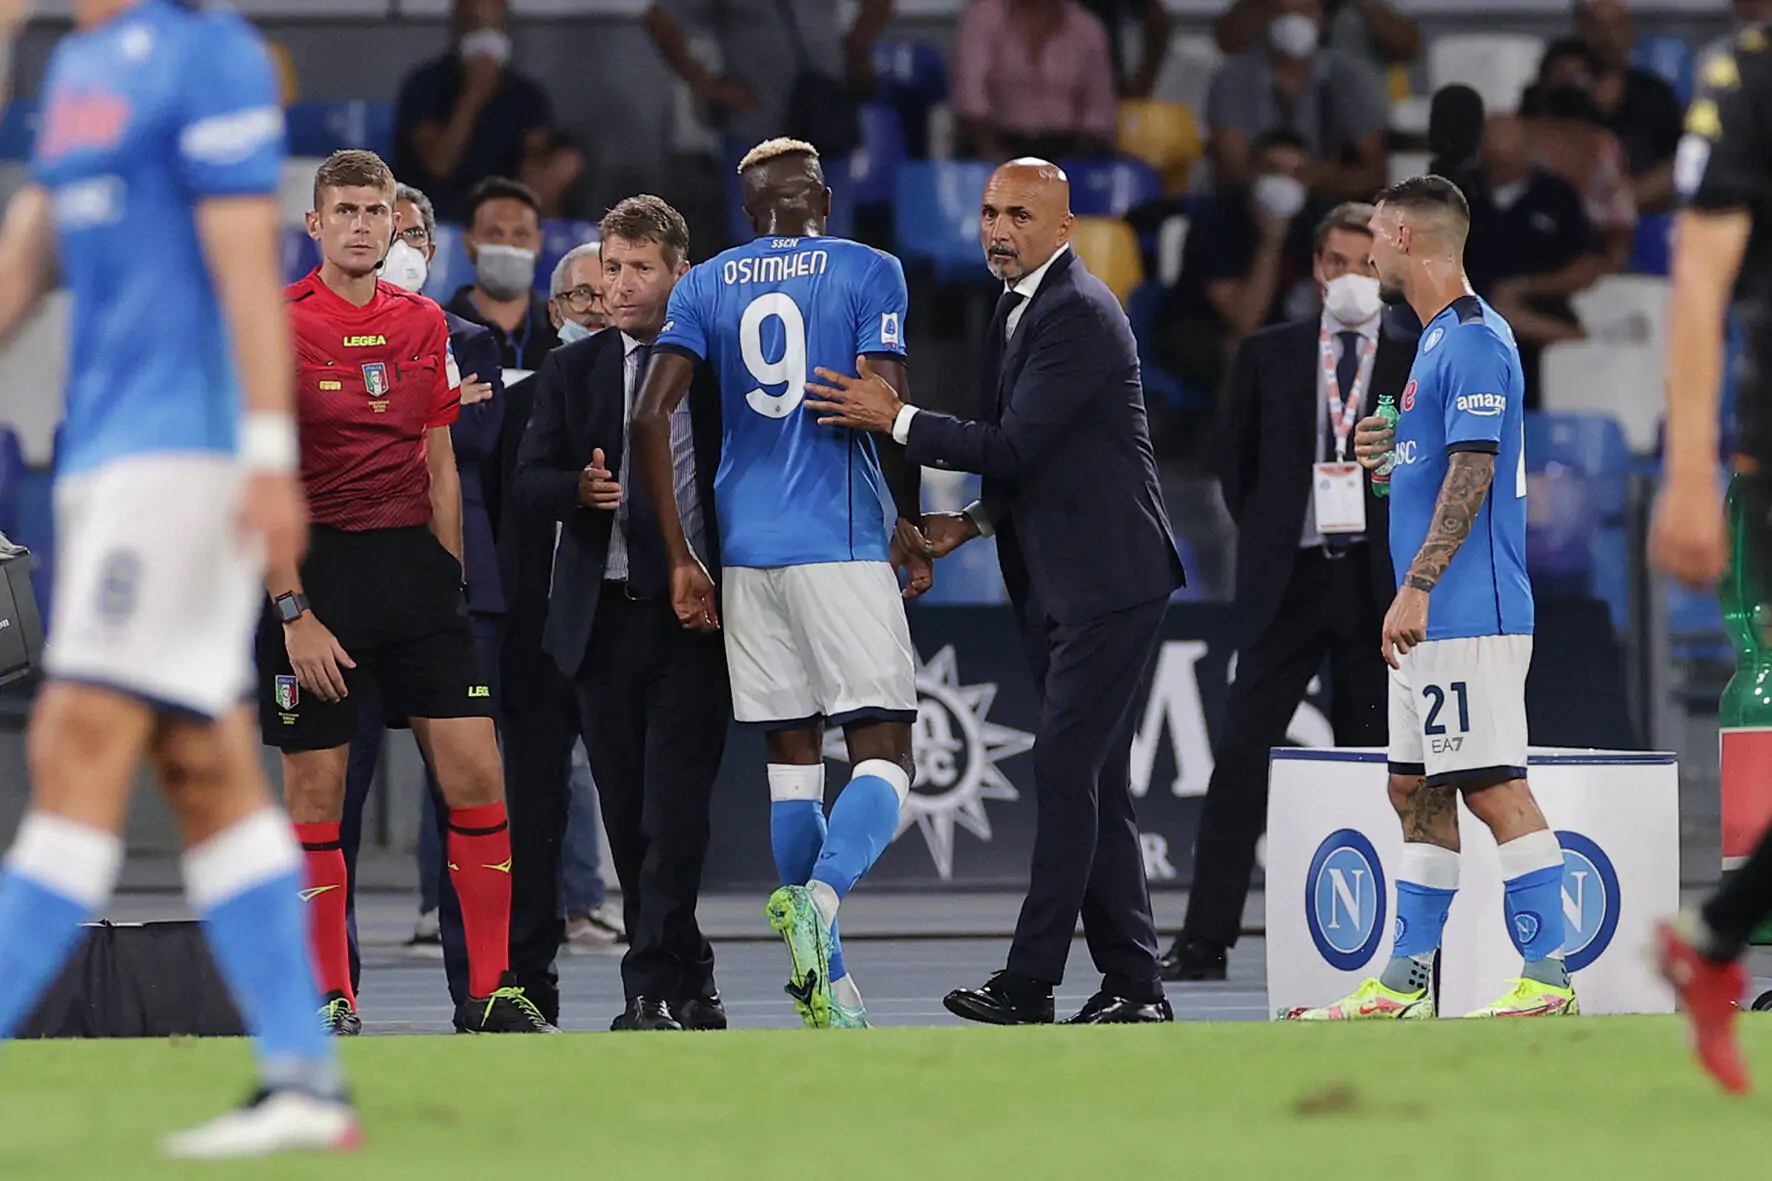 “Il Napoli ha dominato, peccato per le leggerezze”: le parole dell’ex calciatore